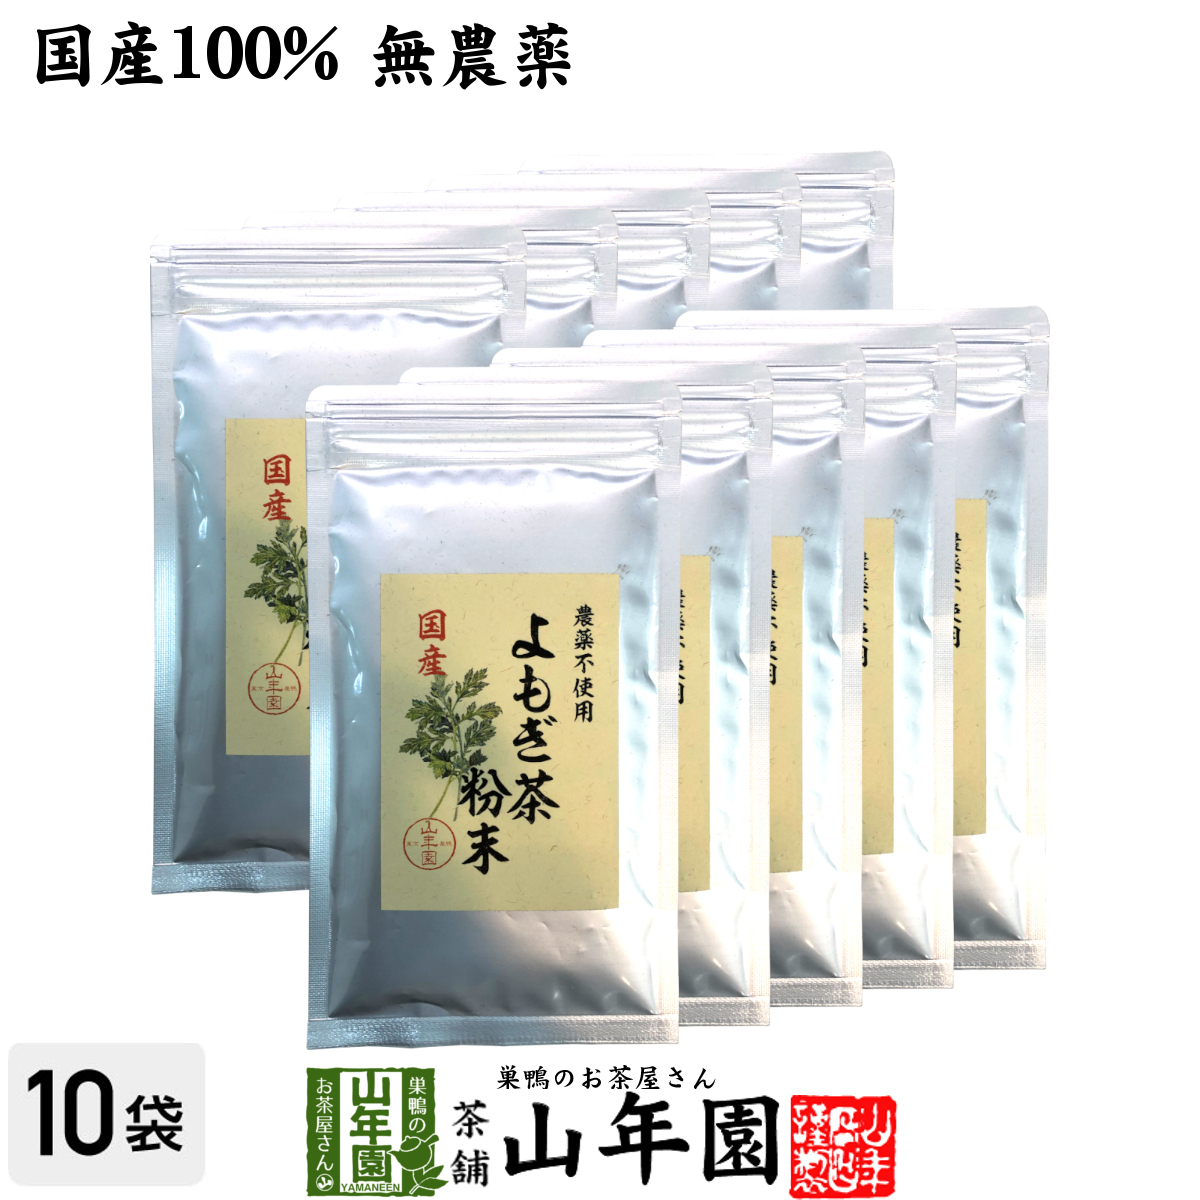 健康茶 国産100% よもぎ茶 粉末 国産 無農薬・無添加 ノンカフェイン 60g×10袋セット